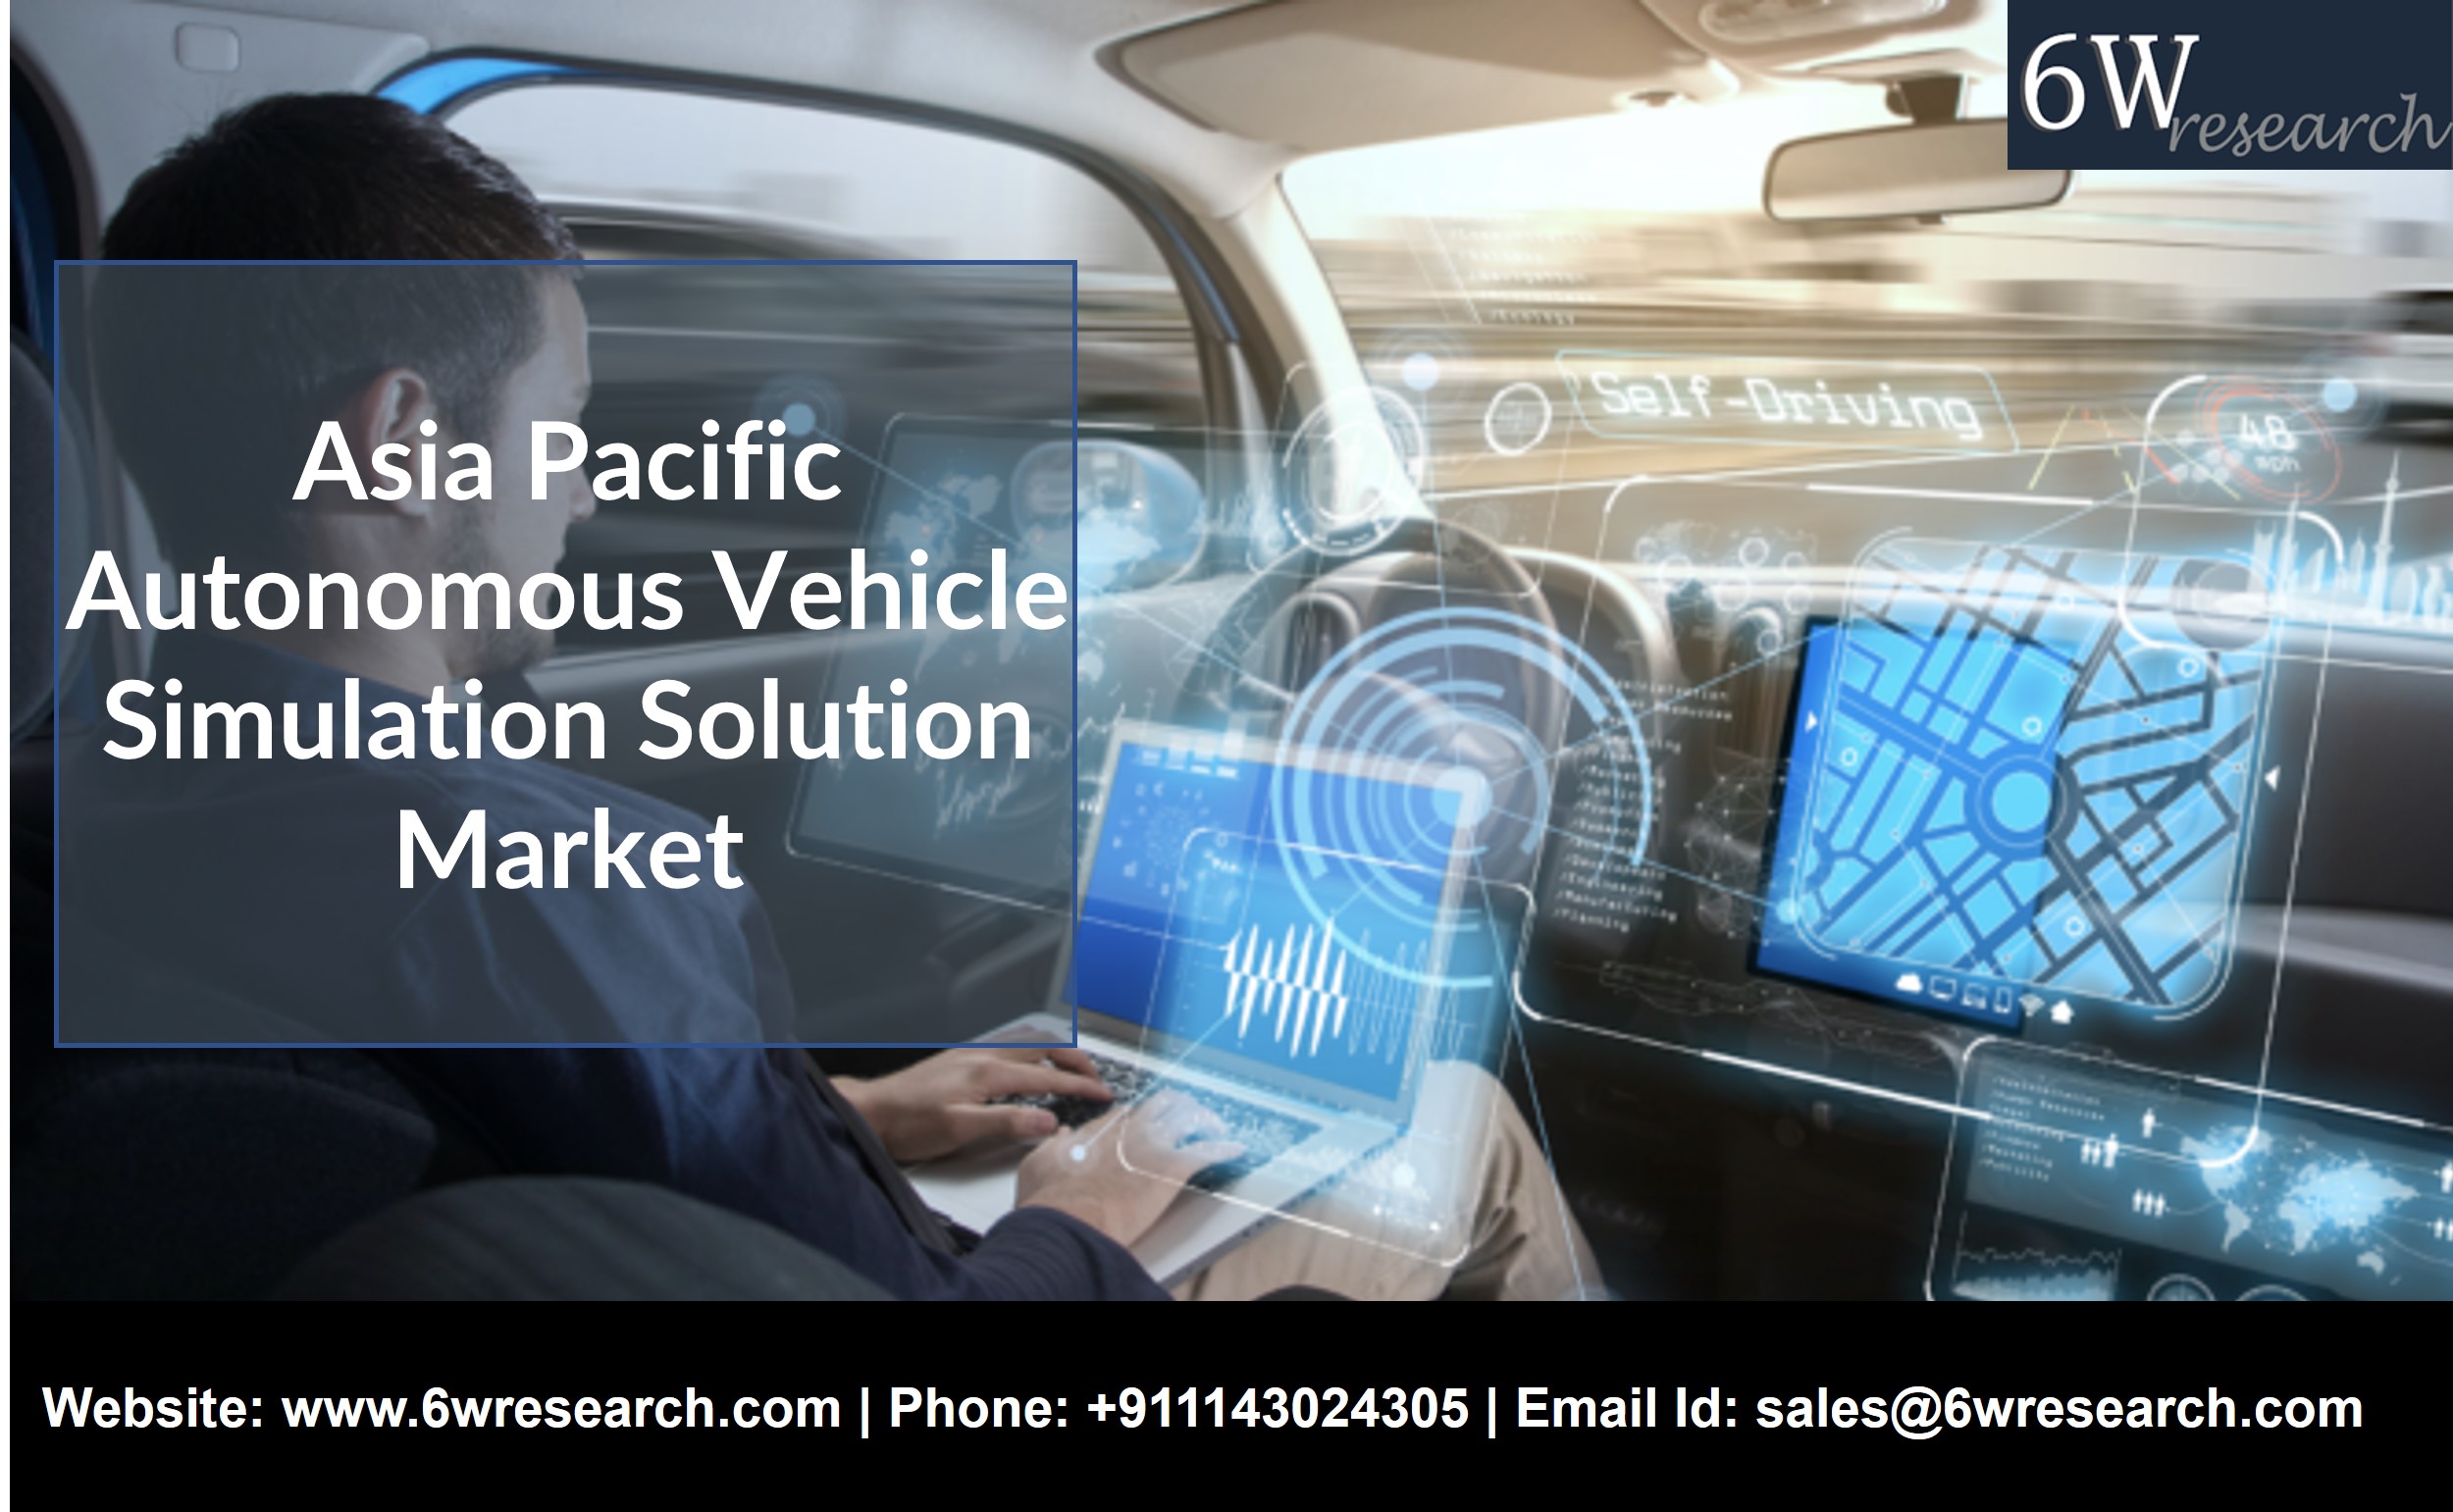 Asia Pacific Autonomous Vehicle Simulation Solution Market